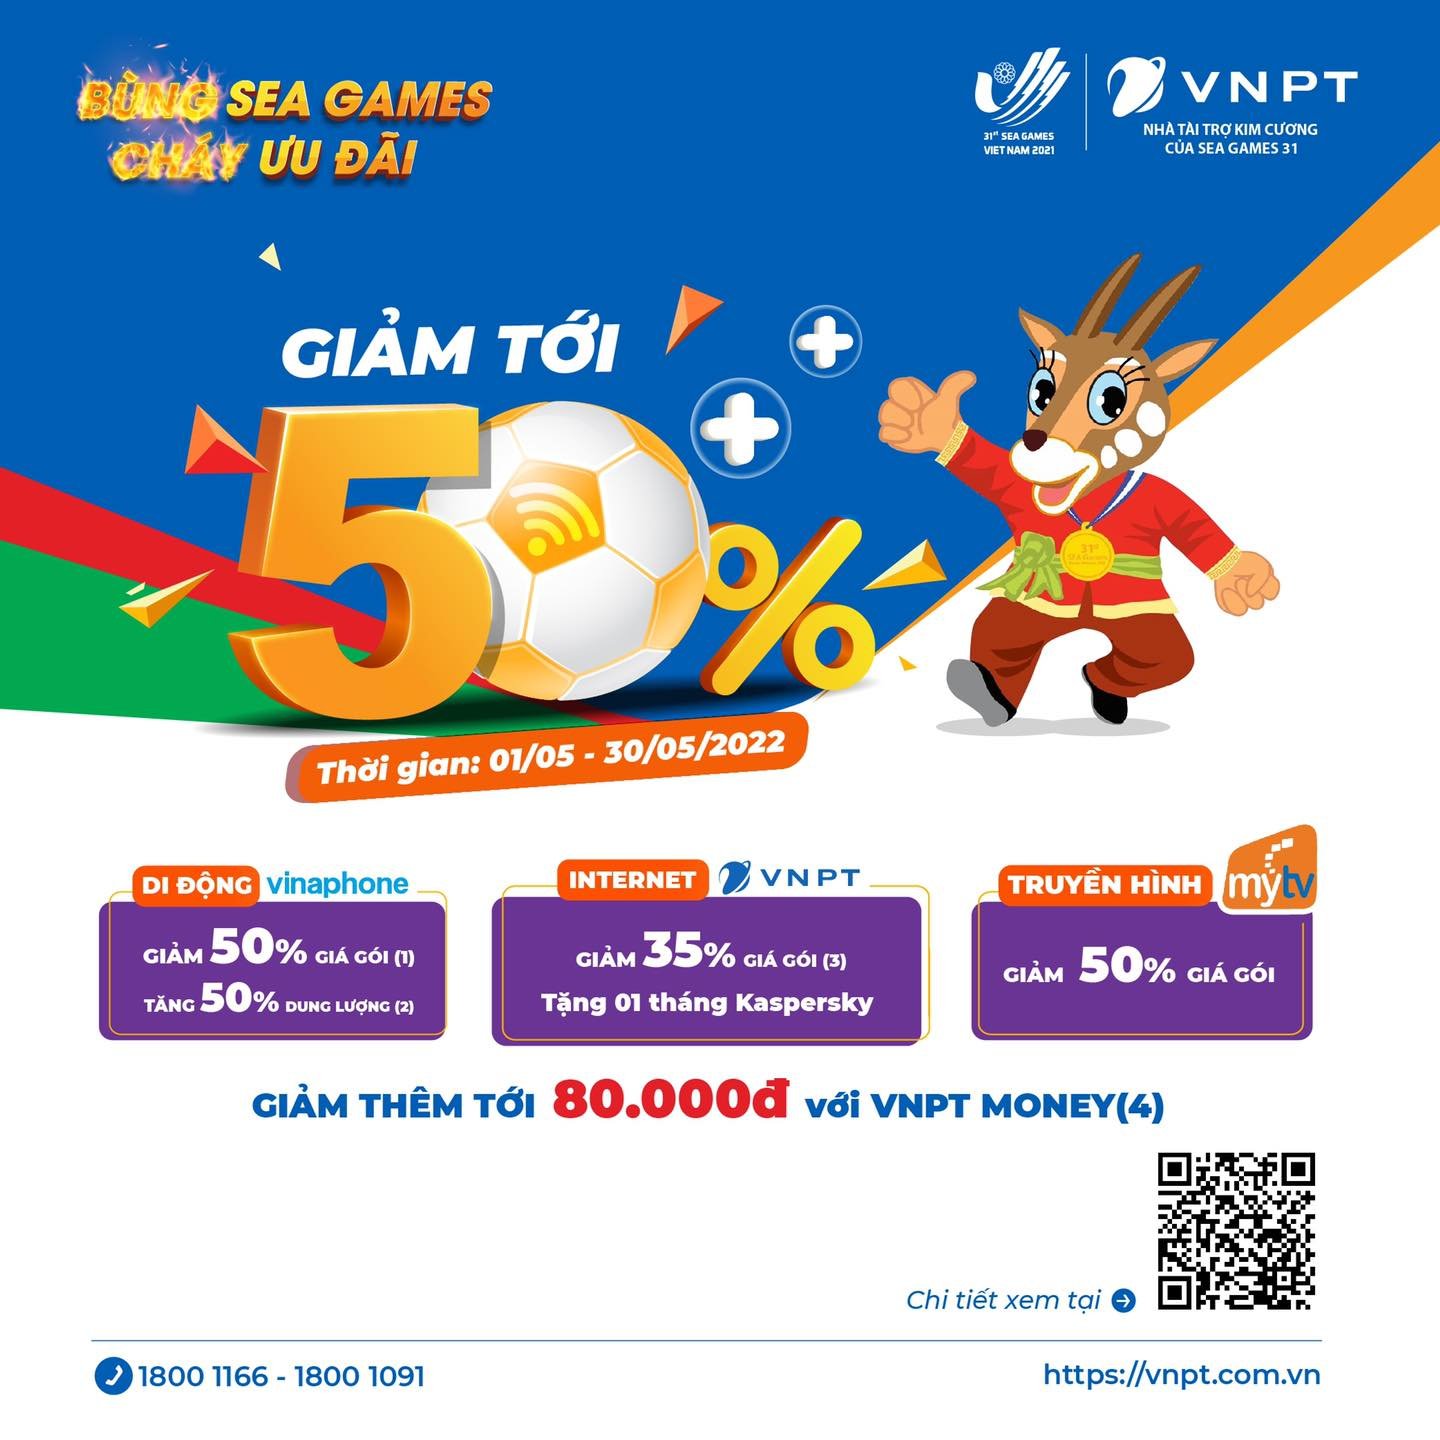 VNPT tưng bừng ưu đãi chào đón SEA Games 31